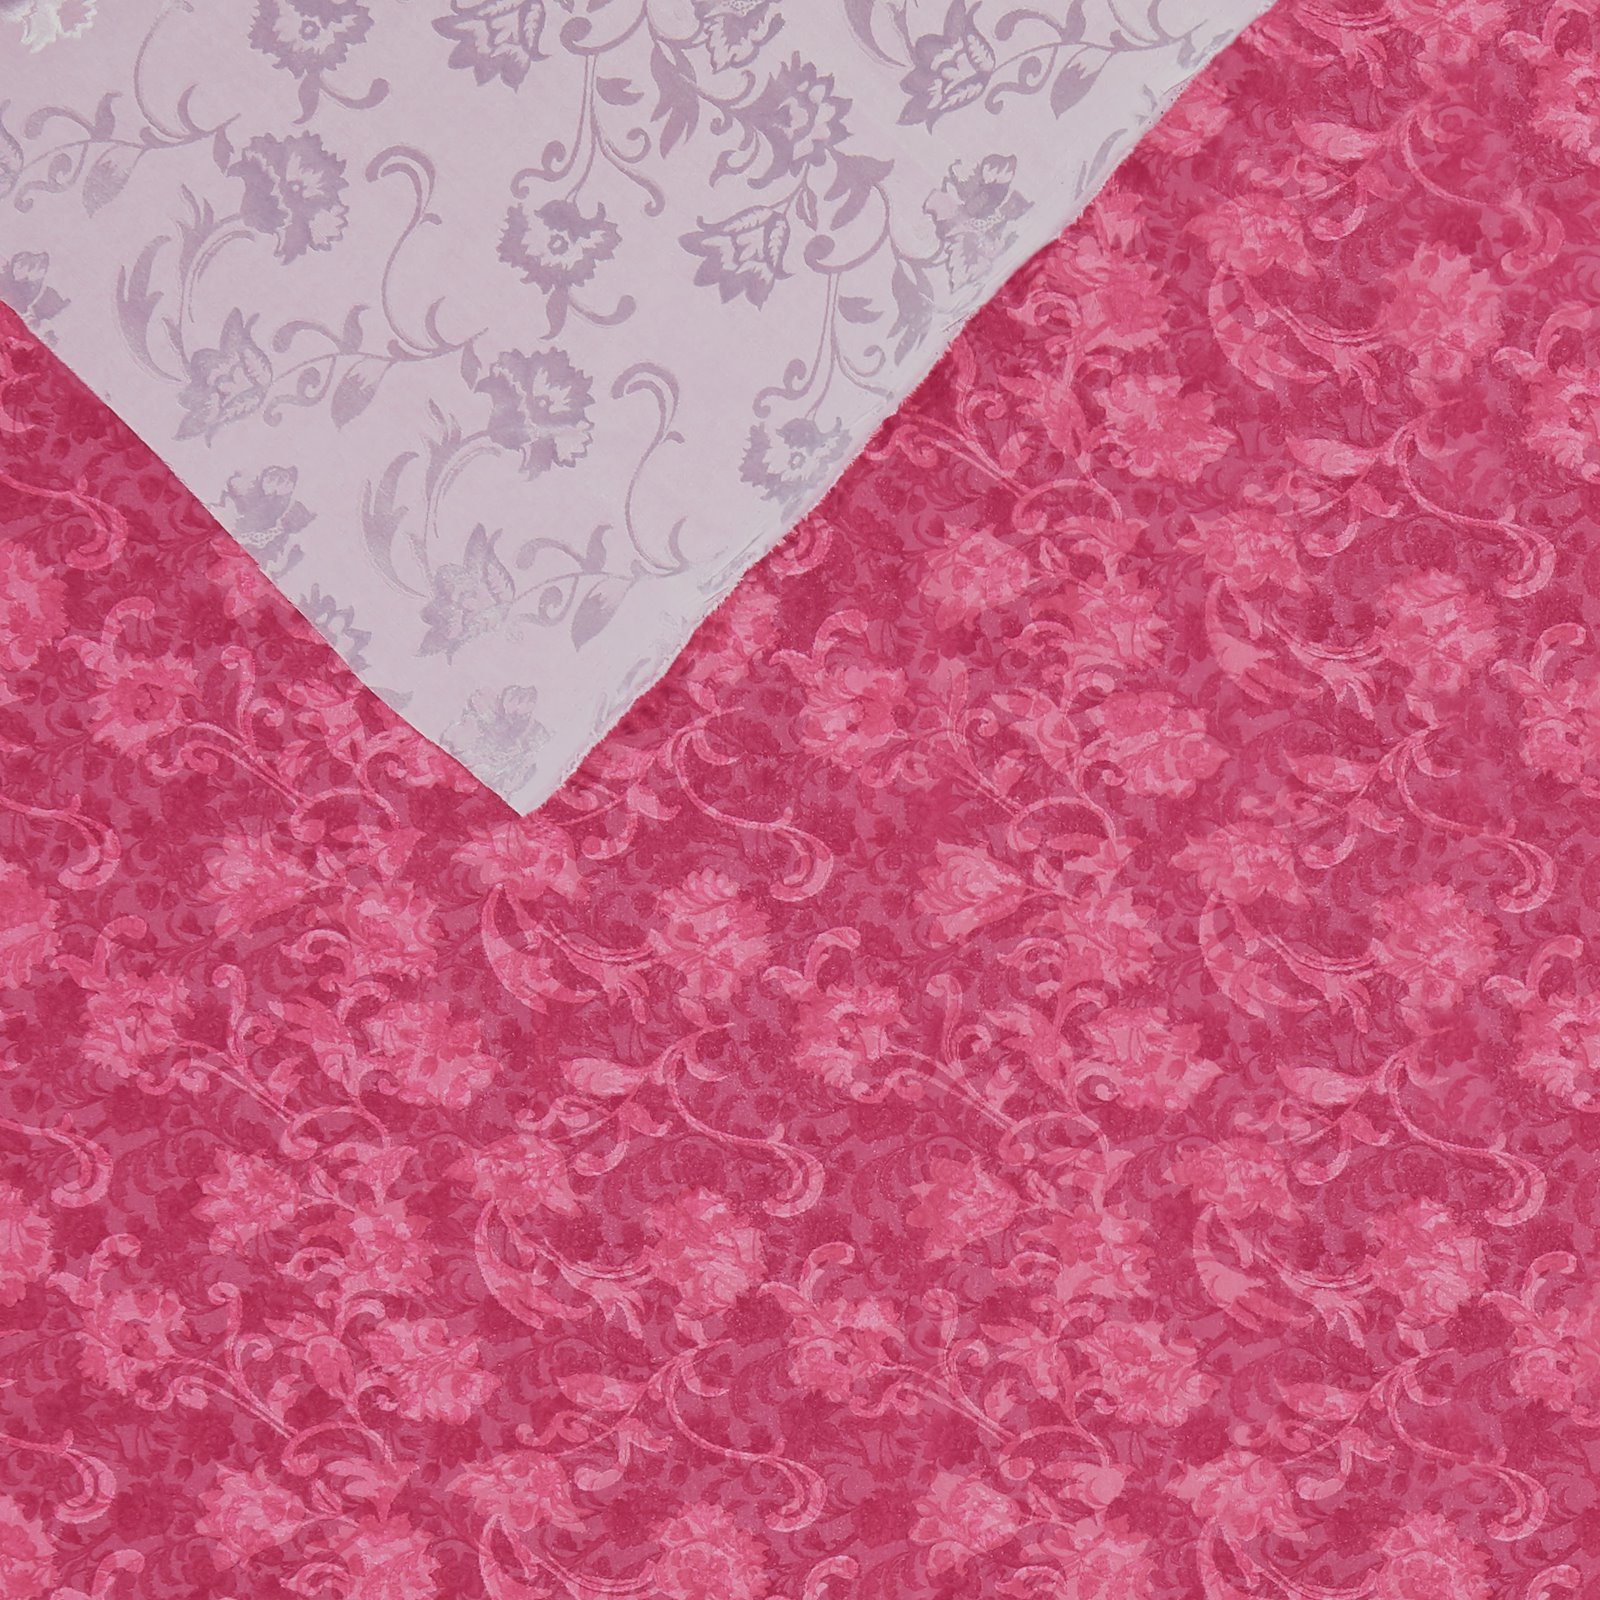 Jacquard gewebt pink mit Blumendruck 670294_pack_b